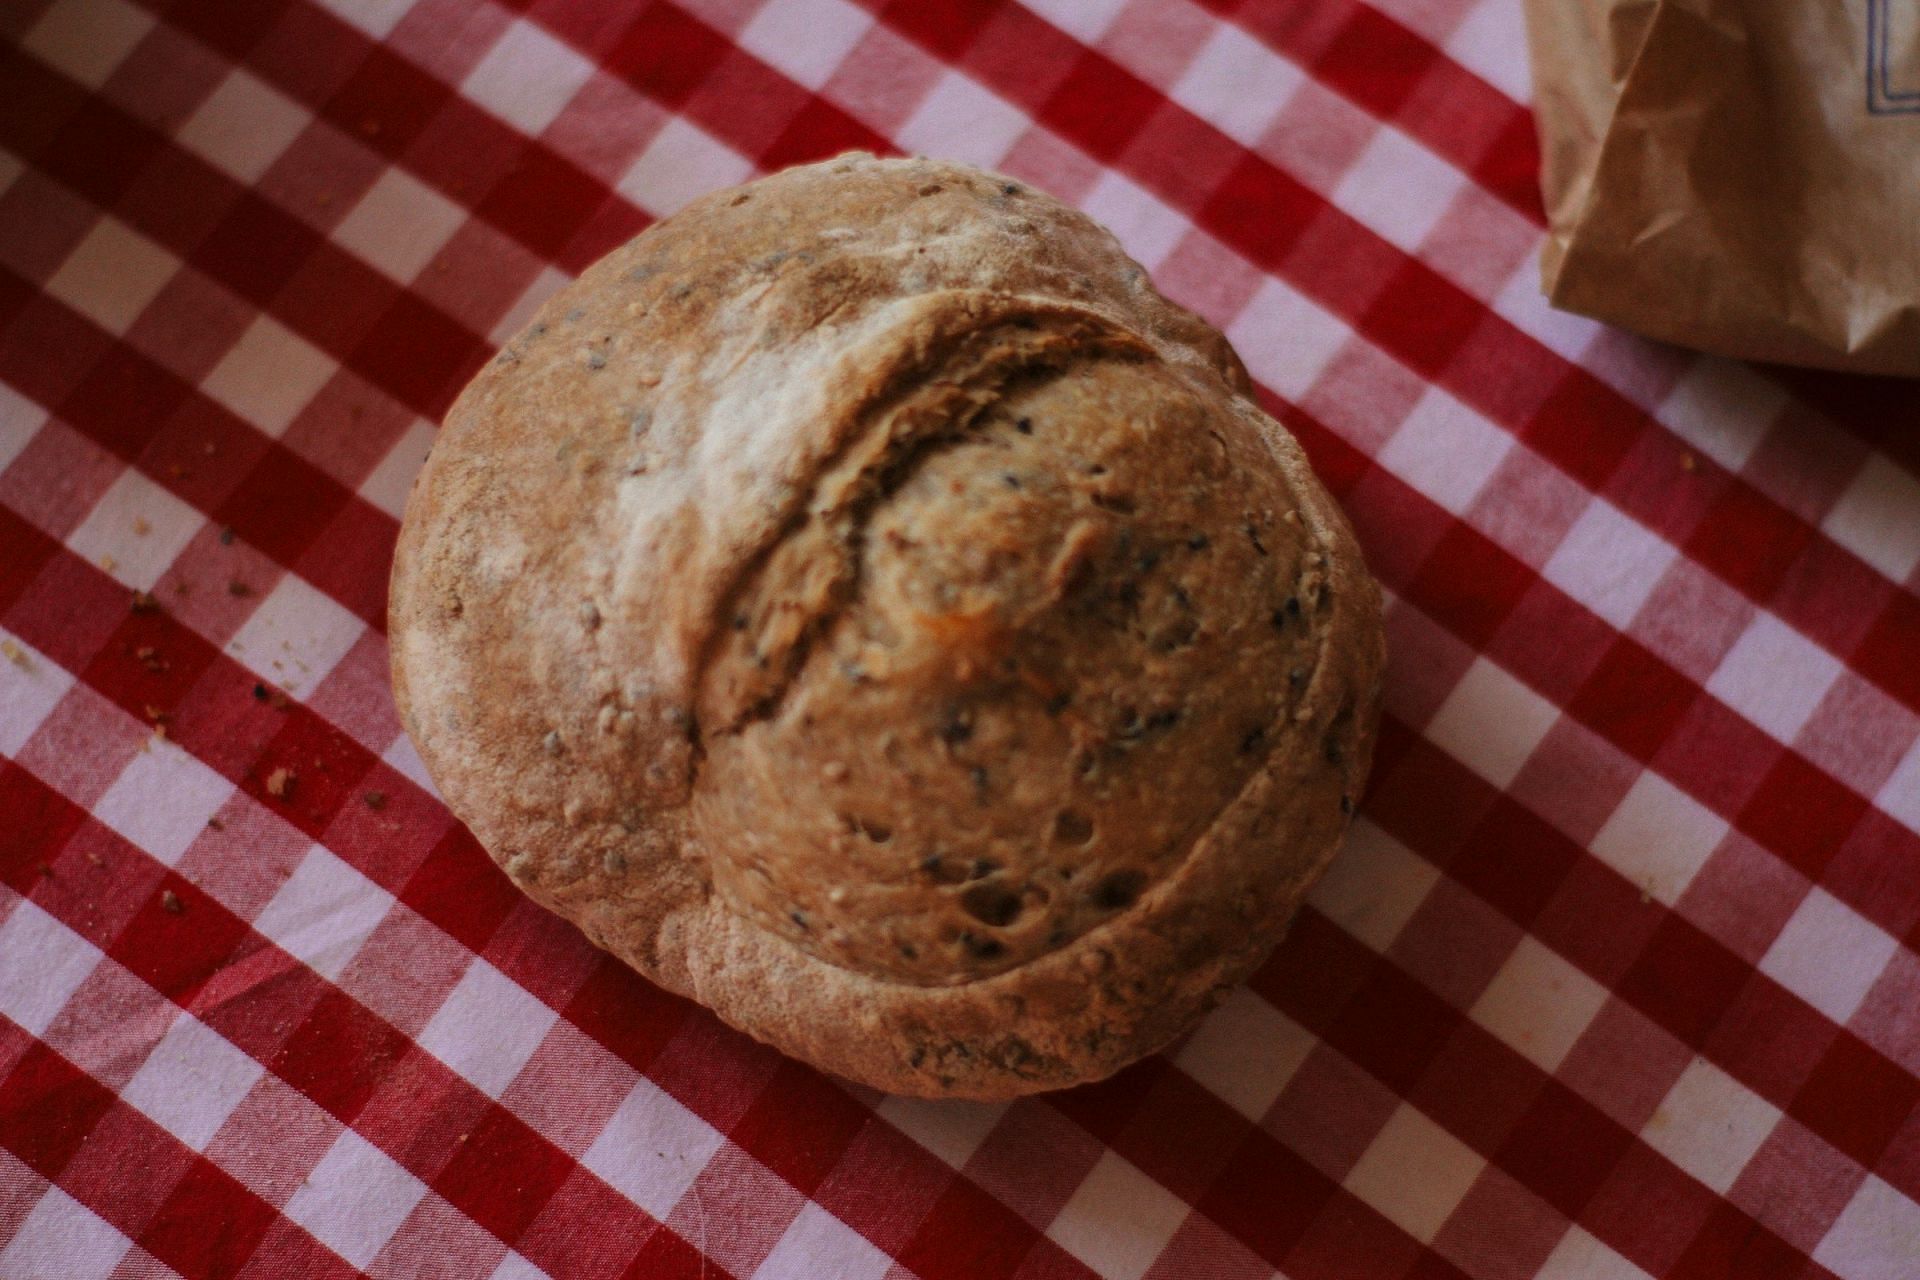 Moldy bread (Image via Unsplash/William)